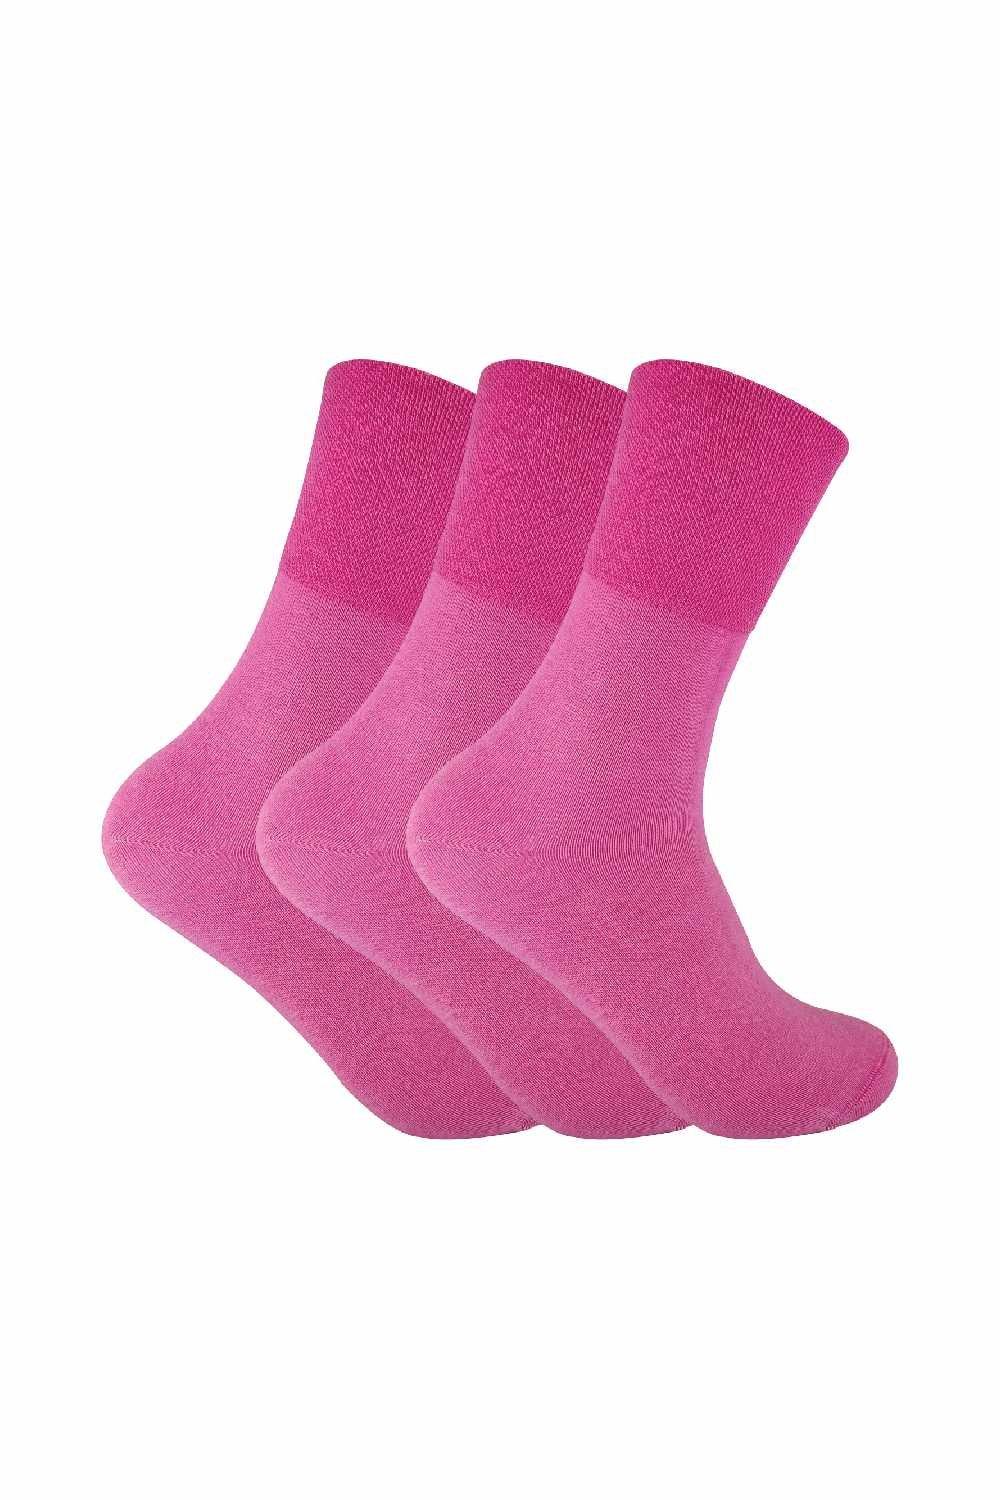 3 Pairs Non Elastic Thermal Diabetic Socks for Poor Circulation